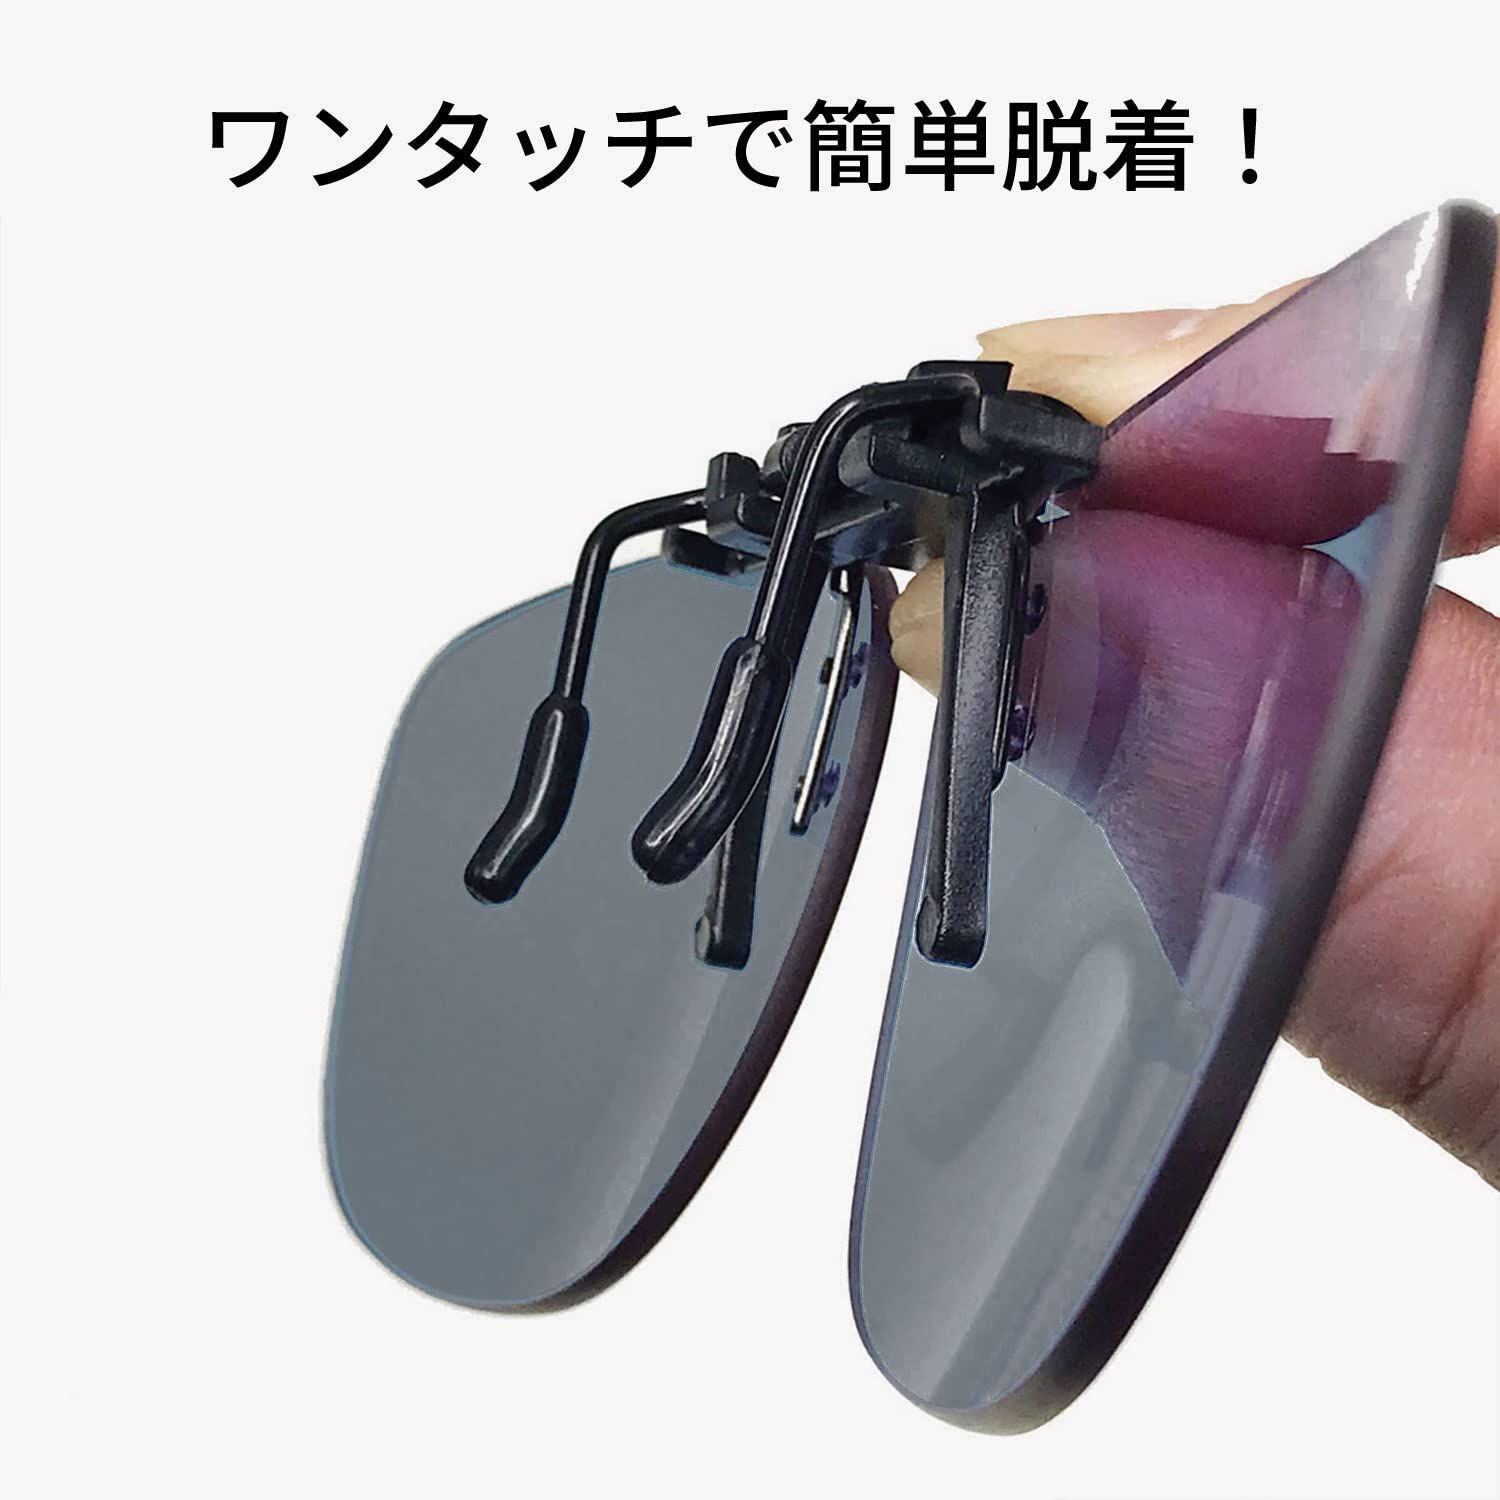 当社の SWANS スワンズ 日本製 偏光 サングラス SCP メガネにつける クリップオン 跳ね上げタイプ 固定タイプ 偏光レンズ メガネの上から 